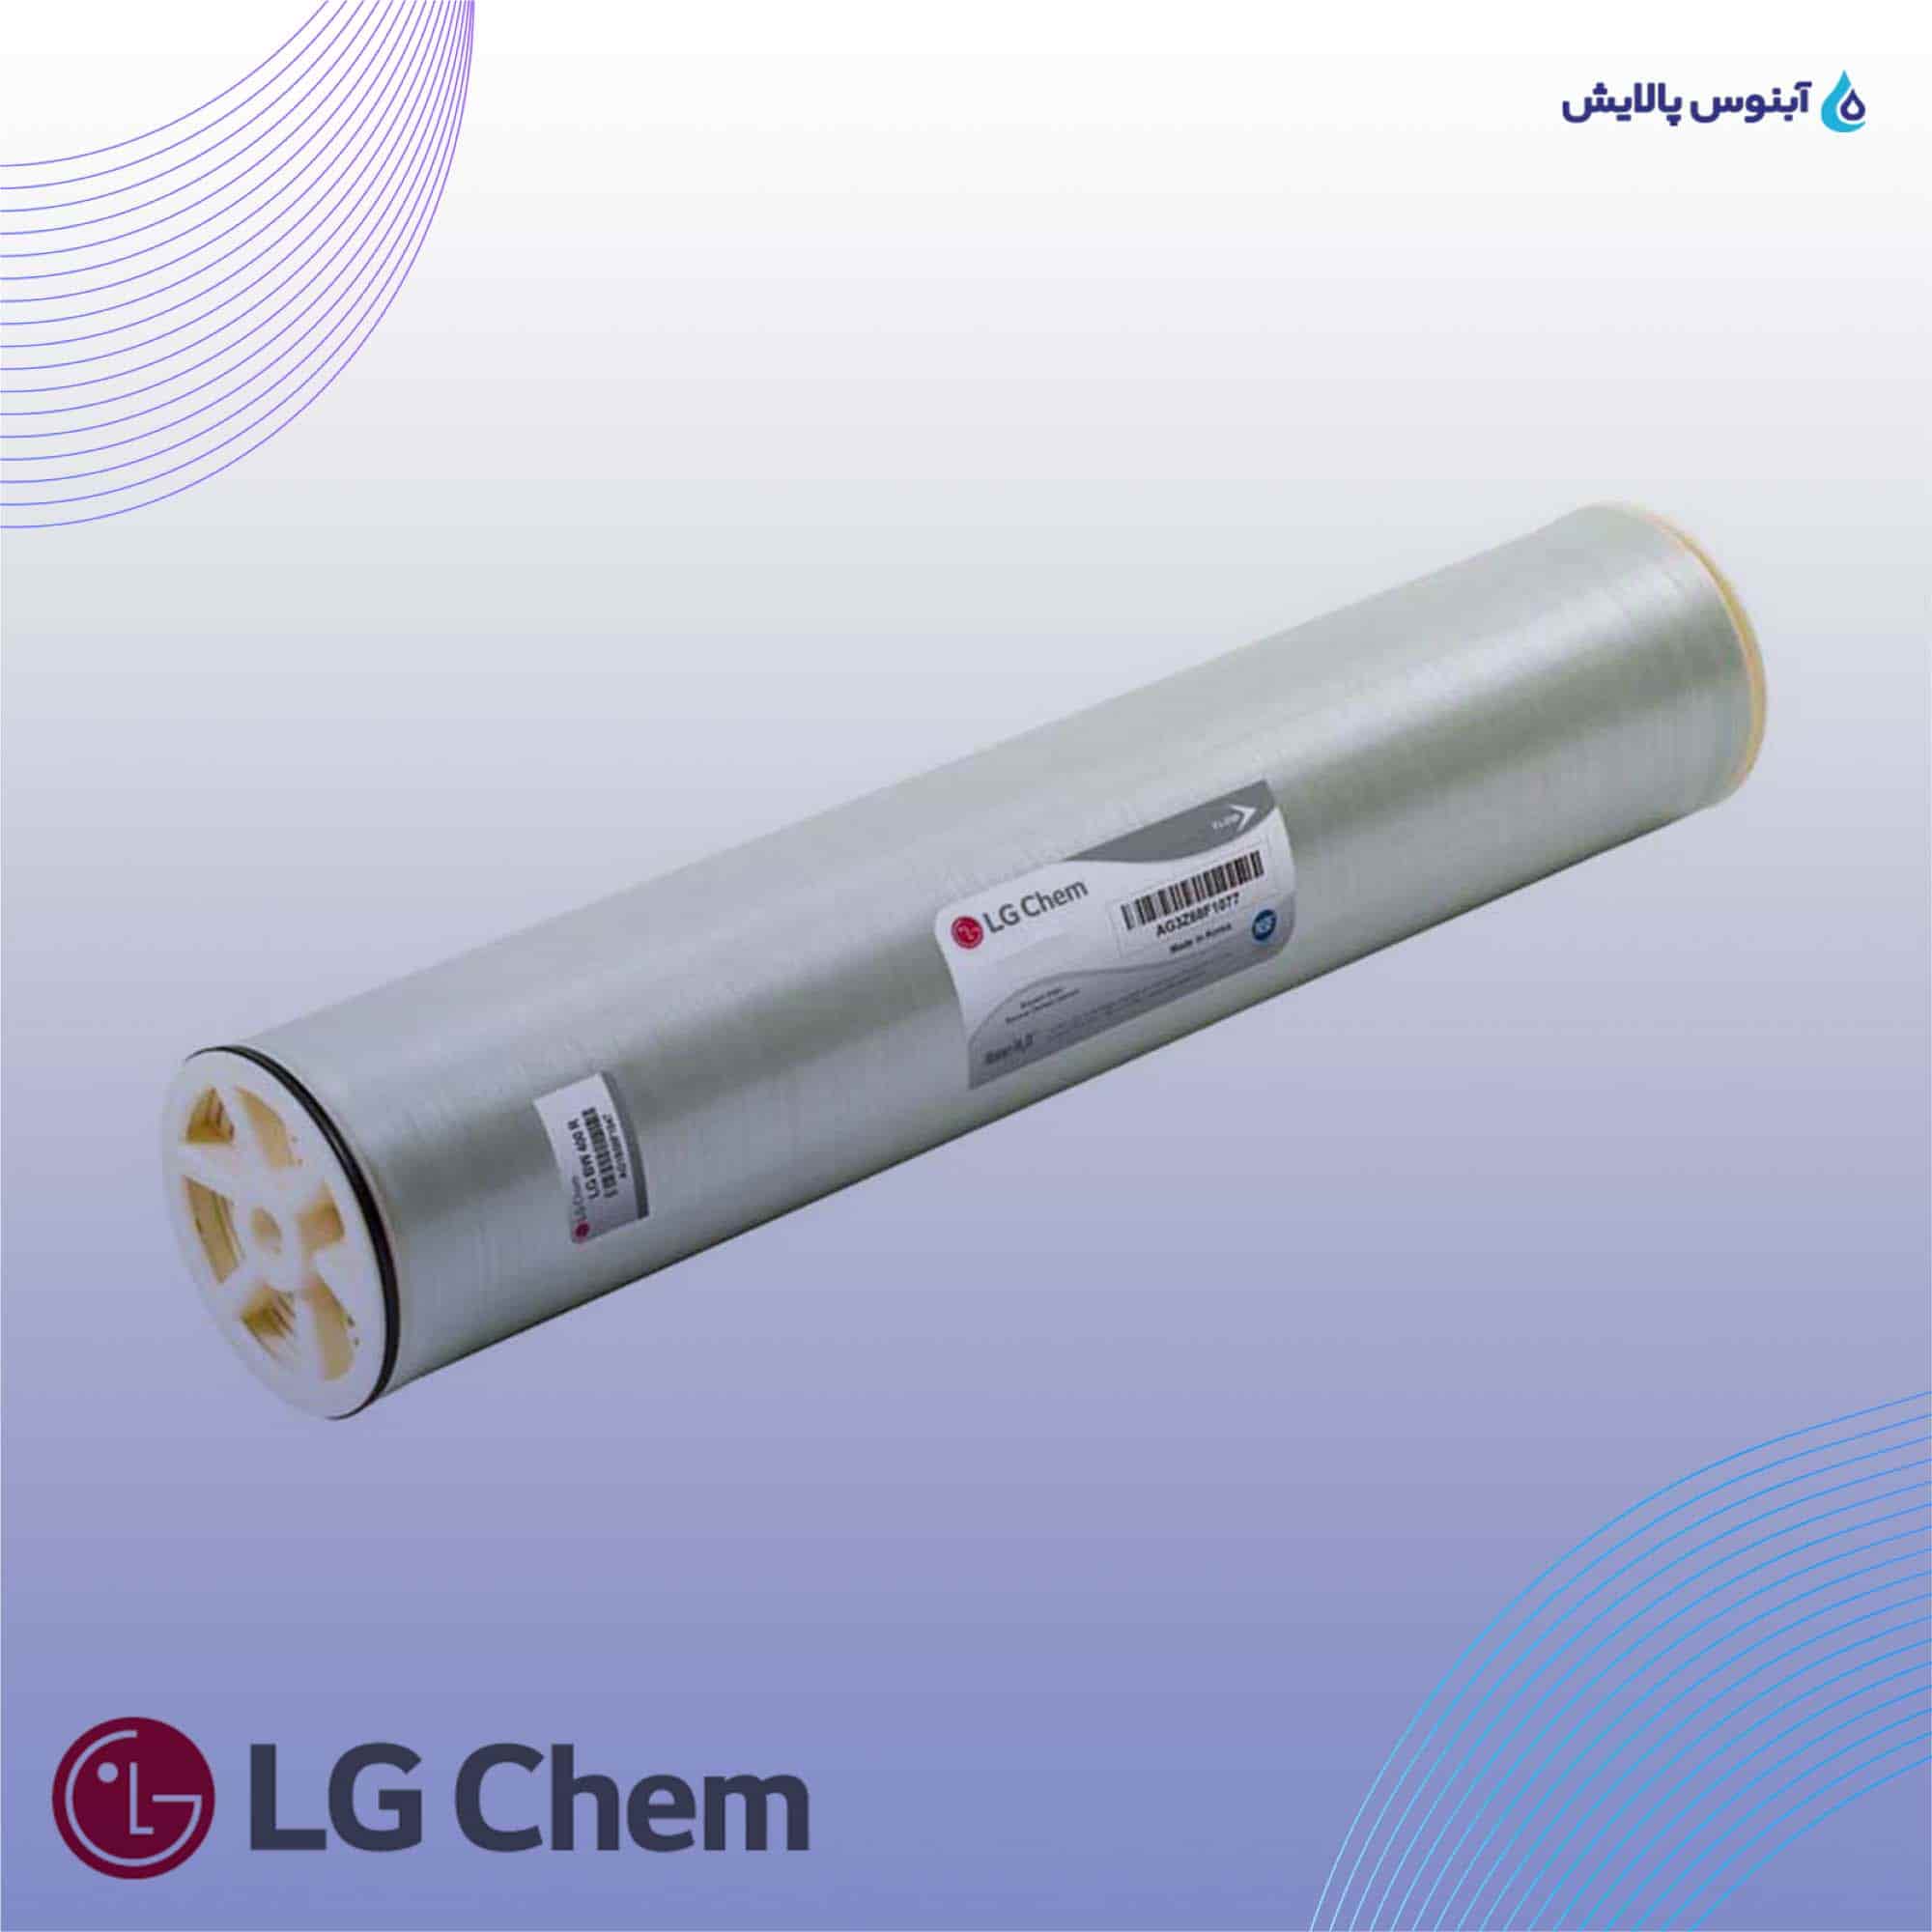 ممبران دریایی 8 اینچ ال جی کم (LG Chem) مدل LG SW 440 GR